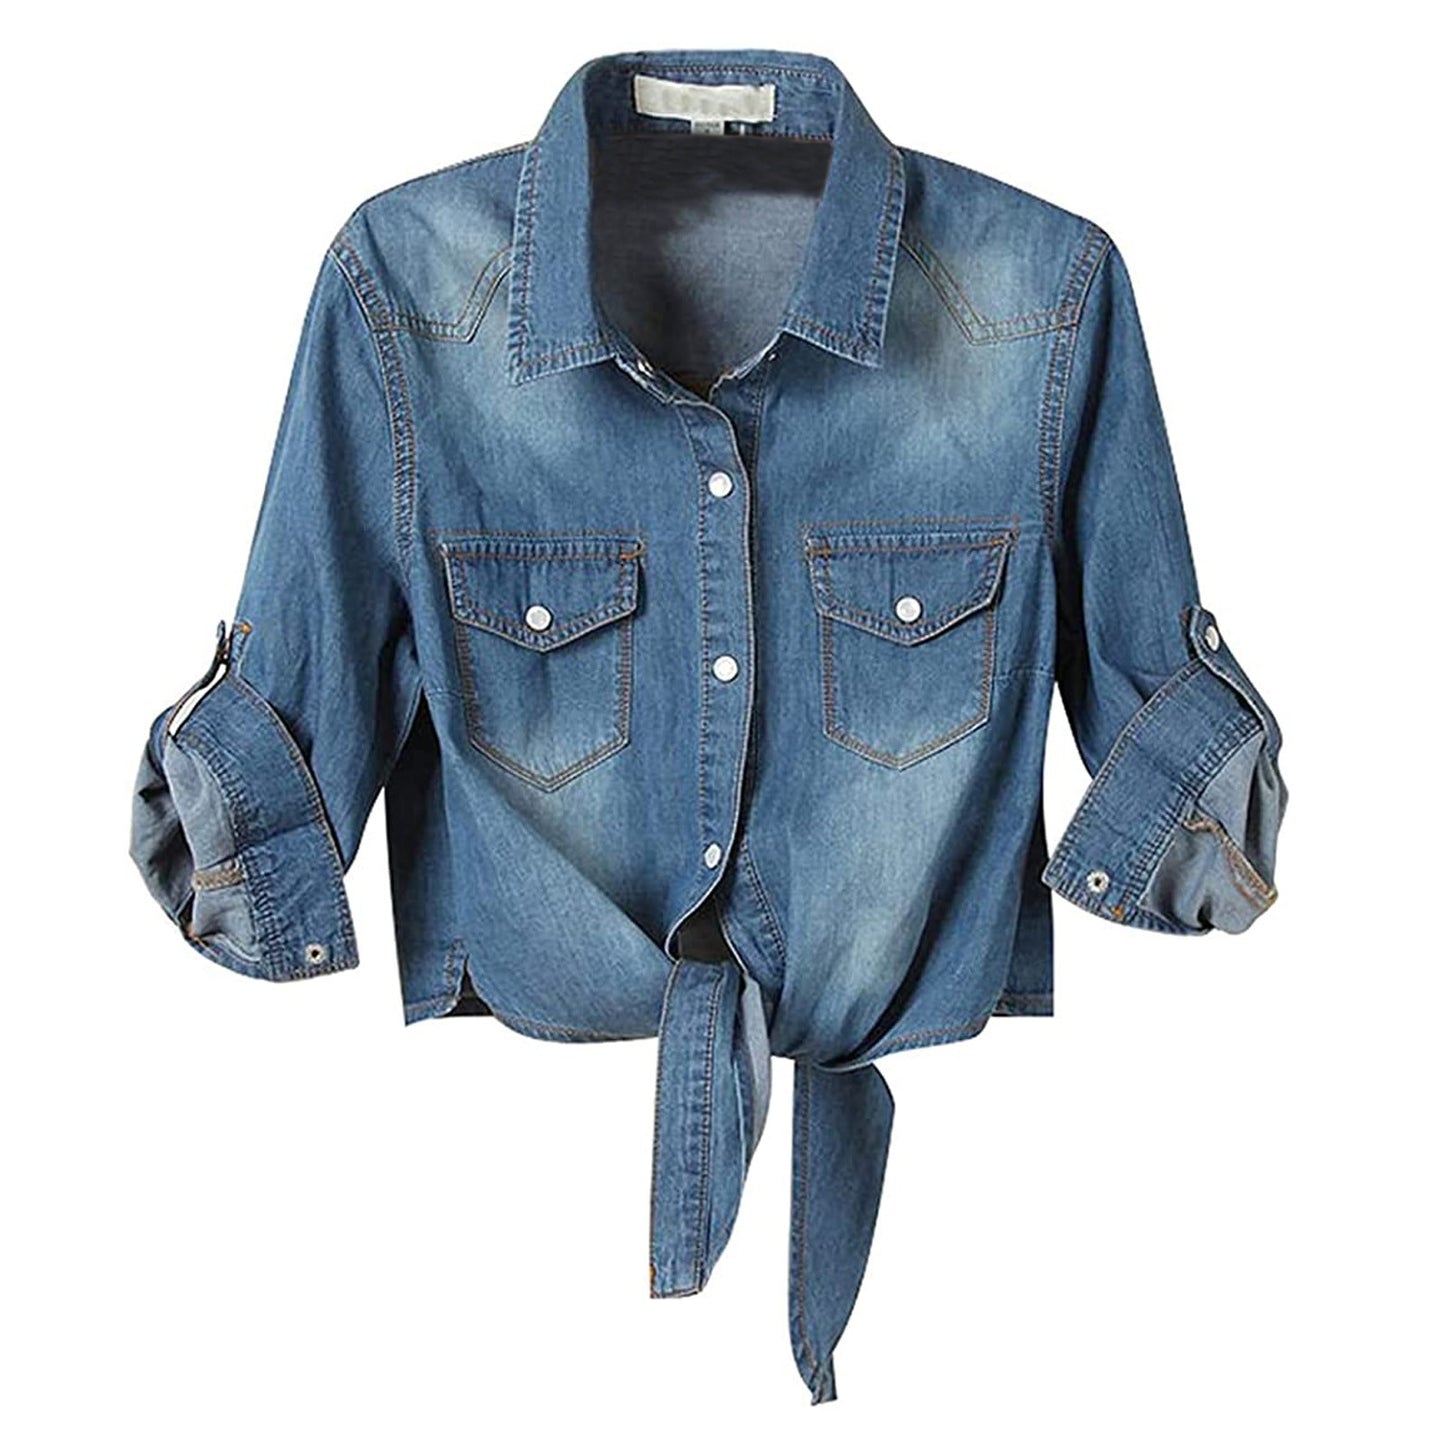 Blue Jean Denim Jacket Women Crop Jeans Jacket Coat Fall Spring 3/4 Sleeve Casual Pocket Knot Tie Denim Shirt Outwear Tops